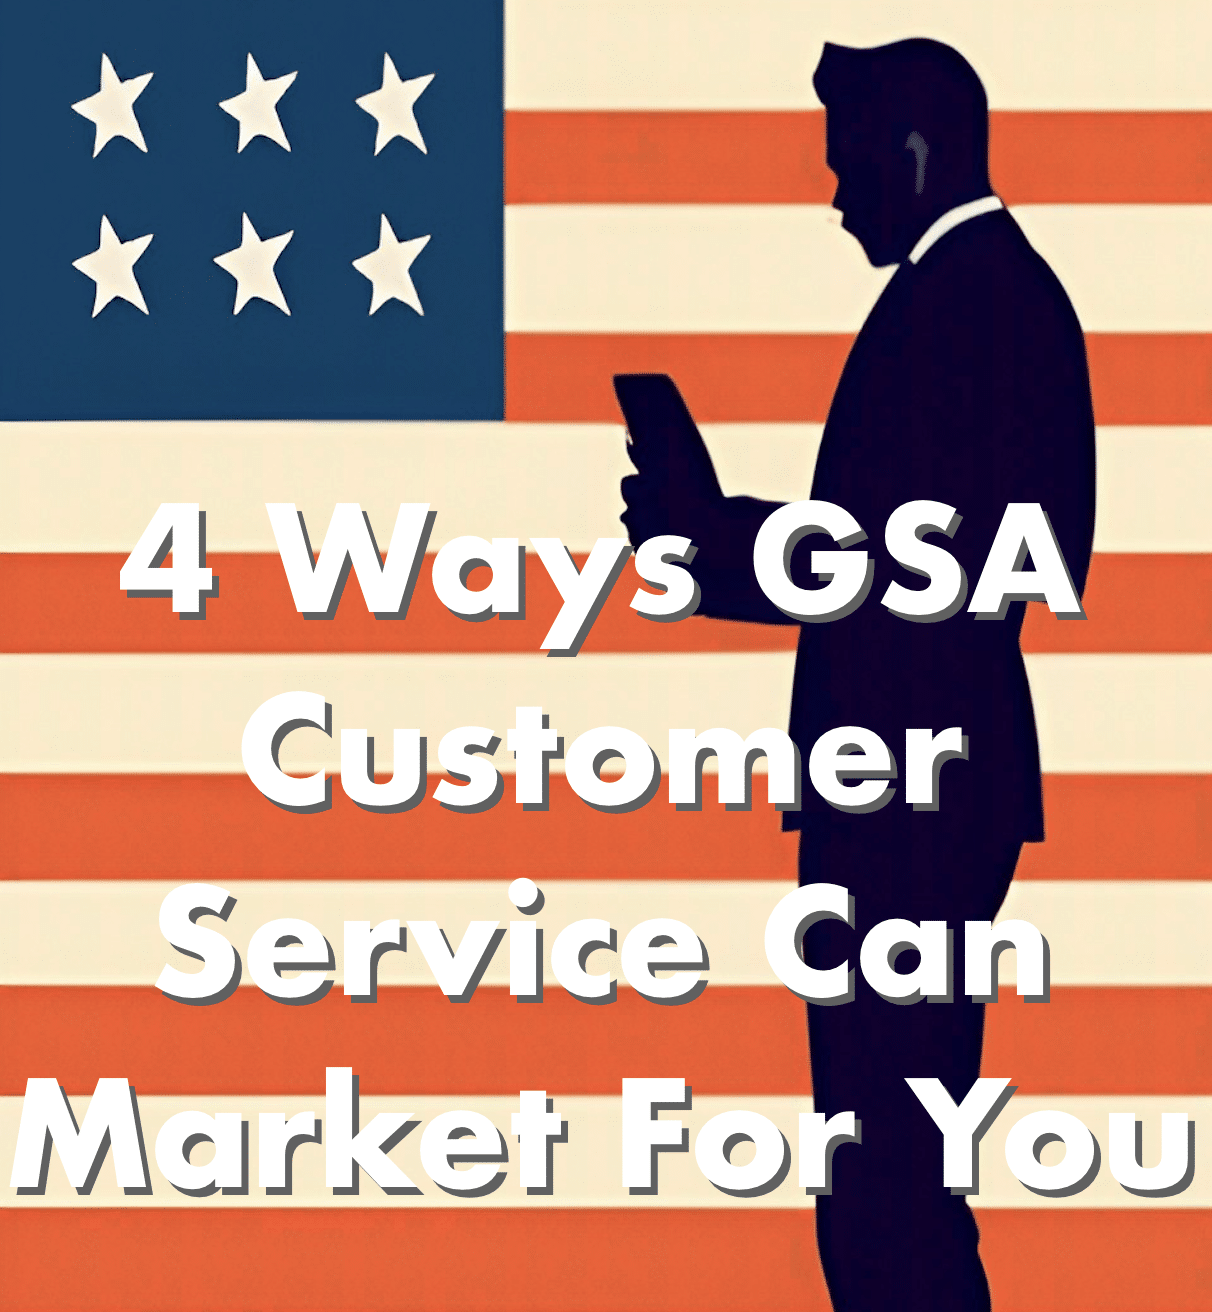 GSA Customer Service